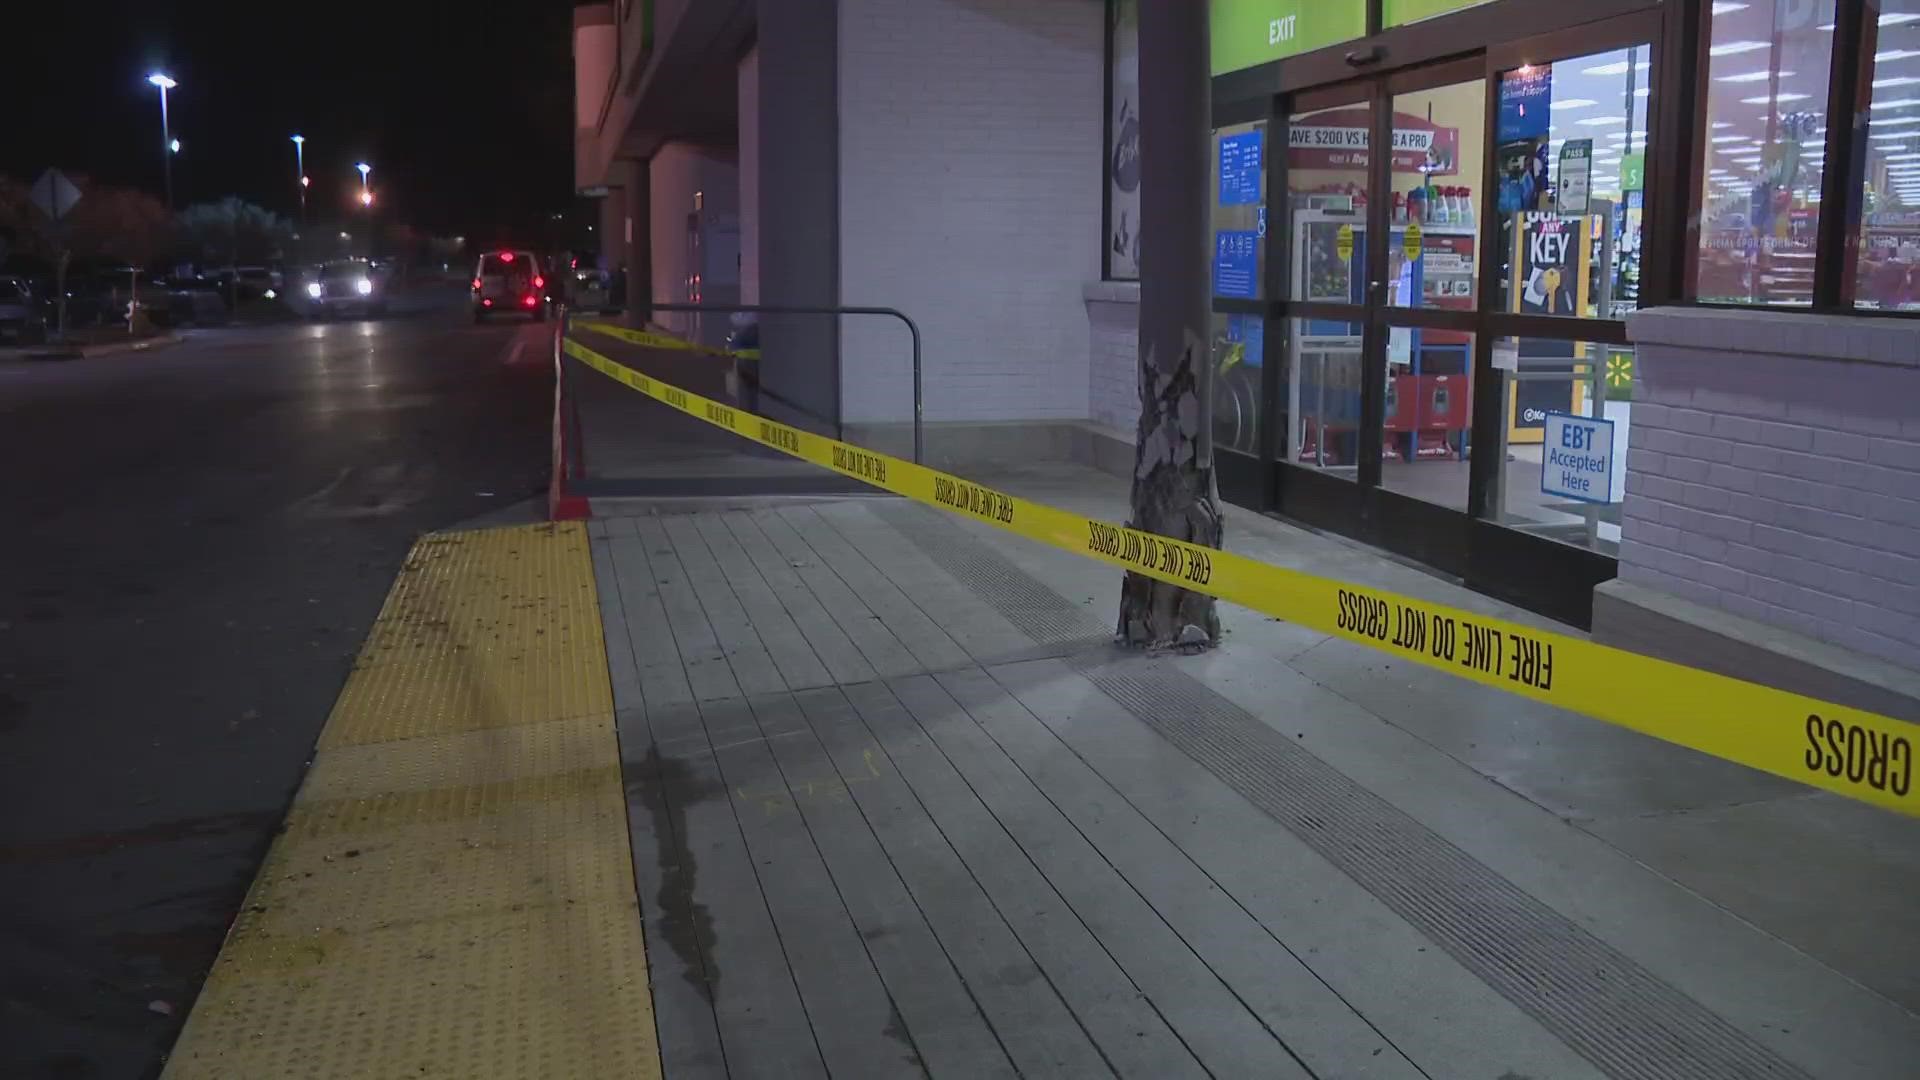 The crash happened just before 4 p.m. at a Walmart in Granite Bay.